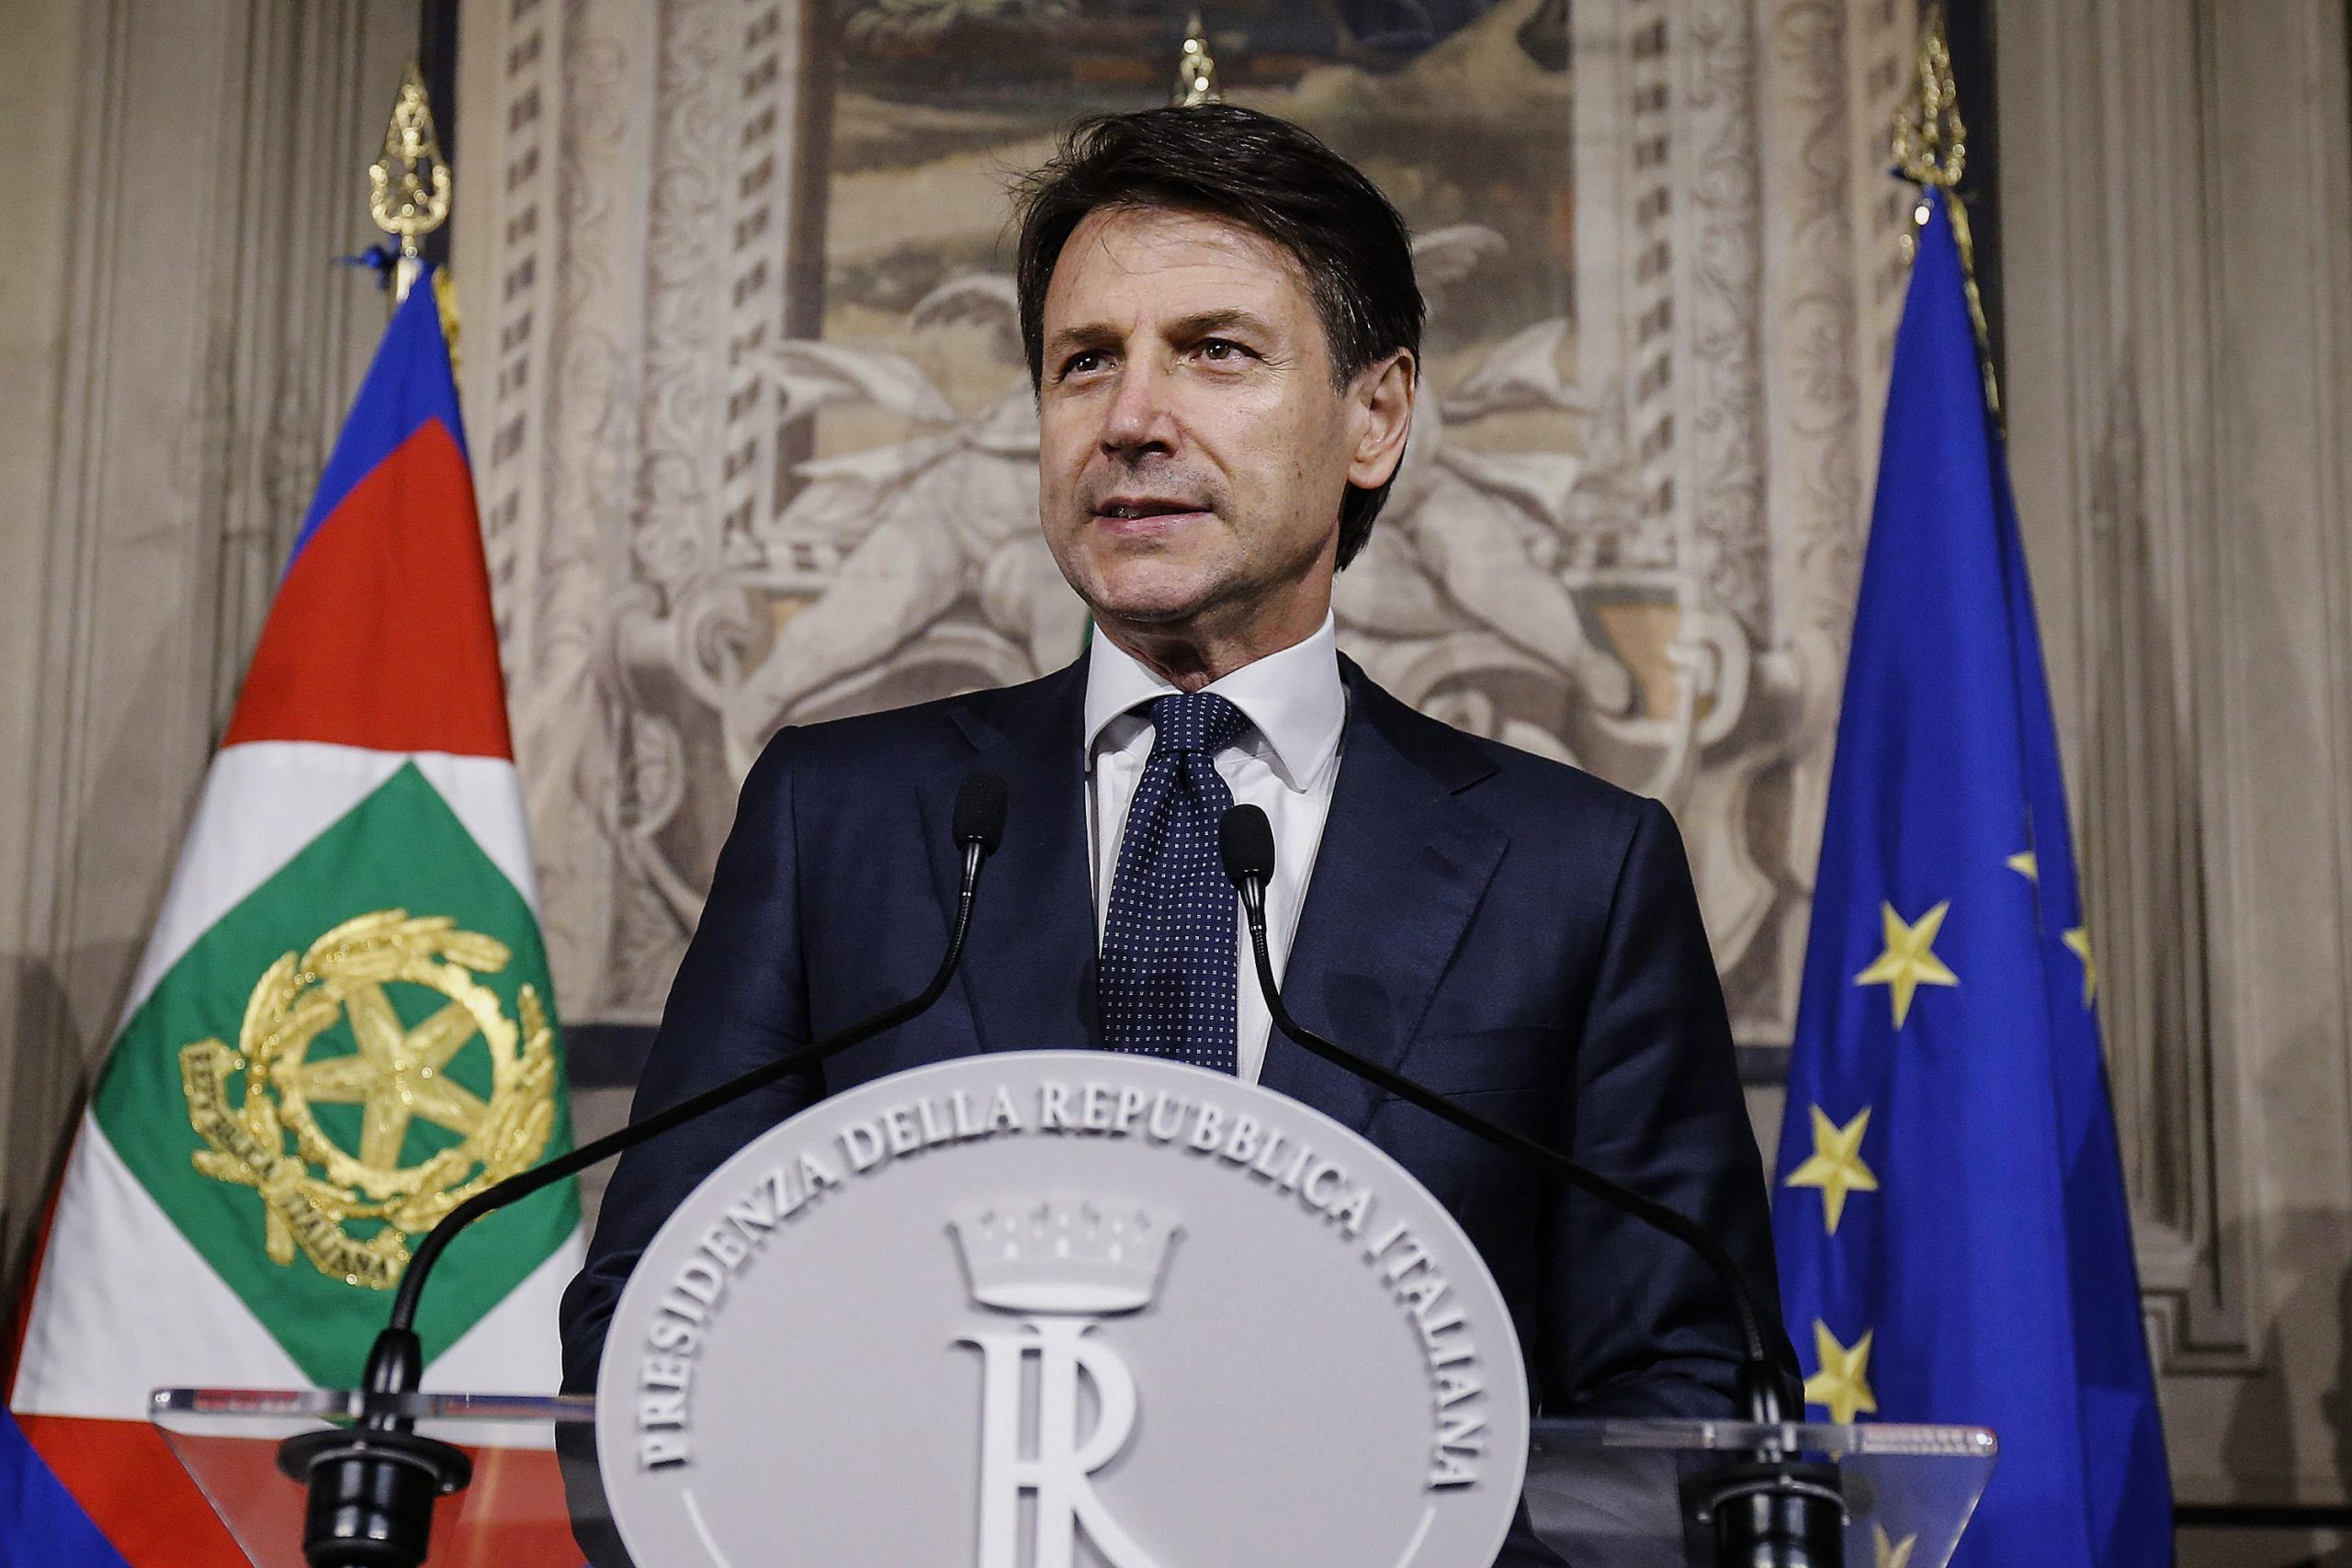 Ιταλός πρωθυπουργός: «Εάν δεν ζητηθεί επίσημα συγγνώμη από την Γαλλία ακυρώνω την επίσκεψή μου»